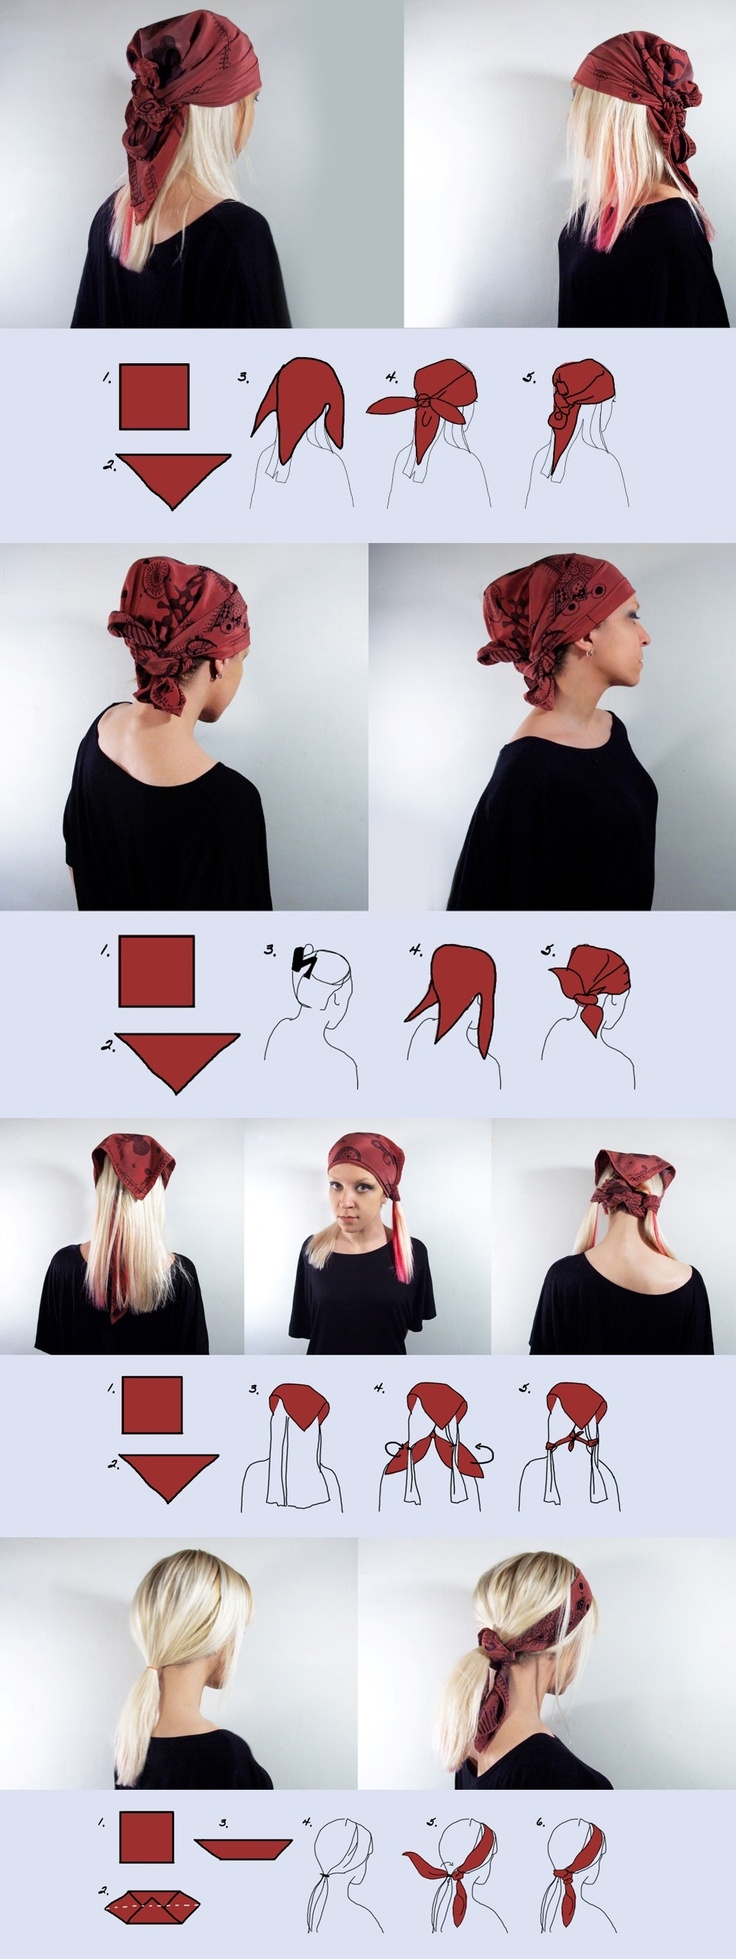 Как правильно завязать платок на голове?